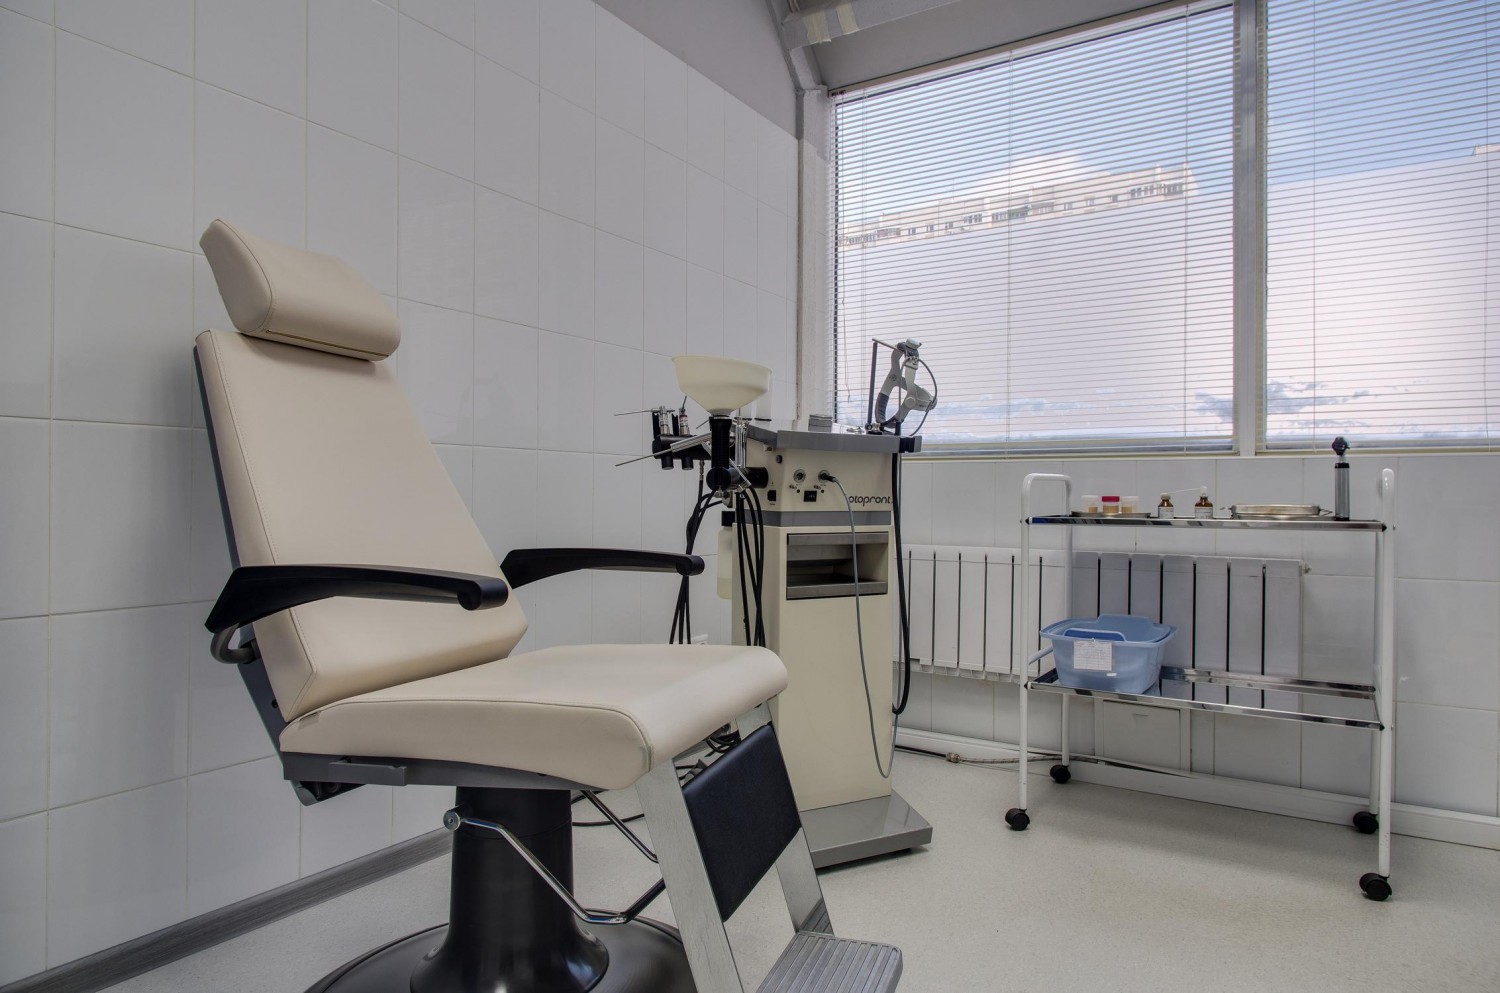 Добромед на братиславской цены на услуги стоматолога